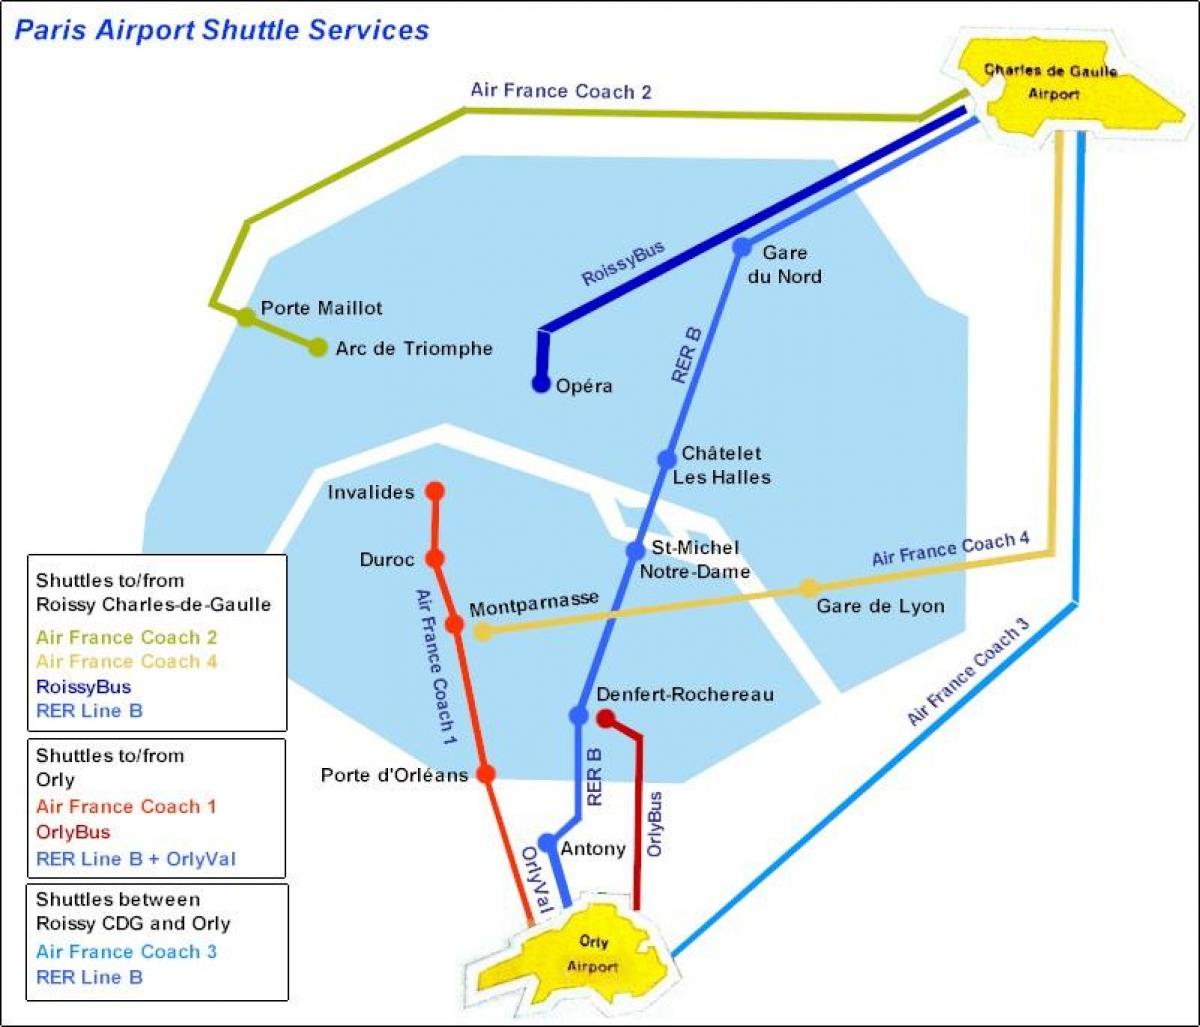 Kort over Paris lufthavnstransport